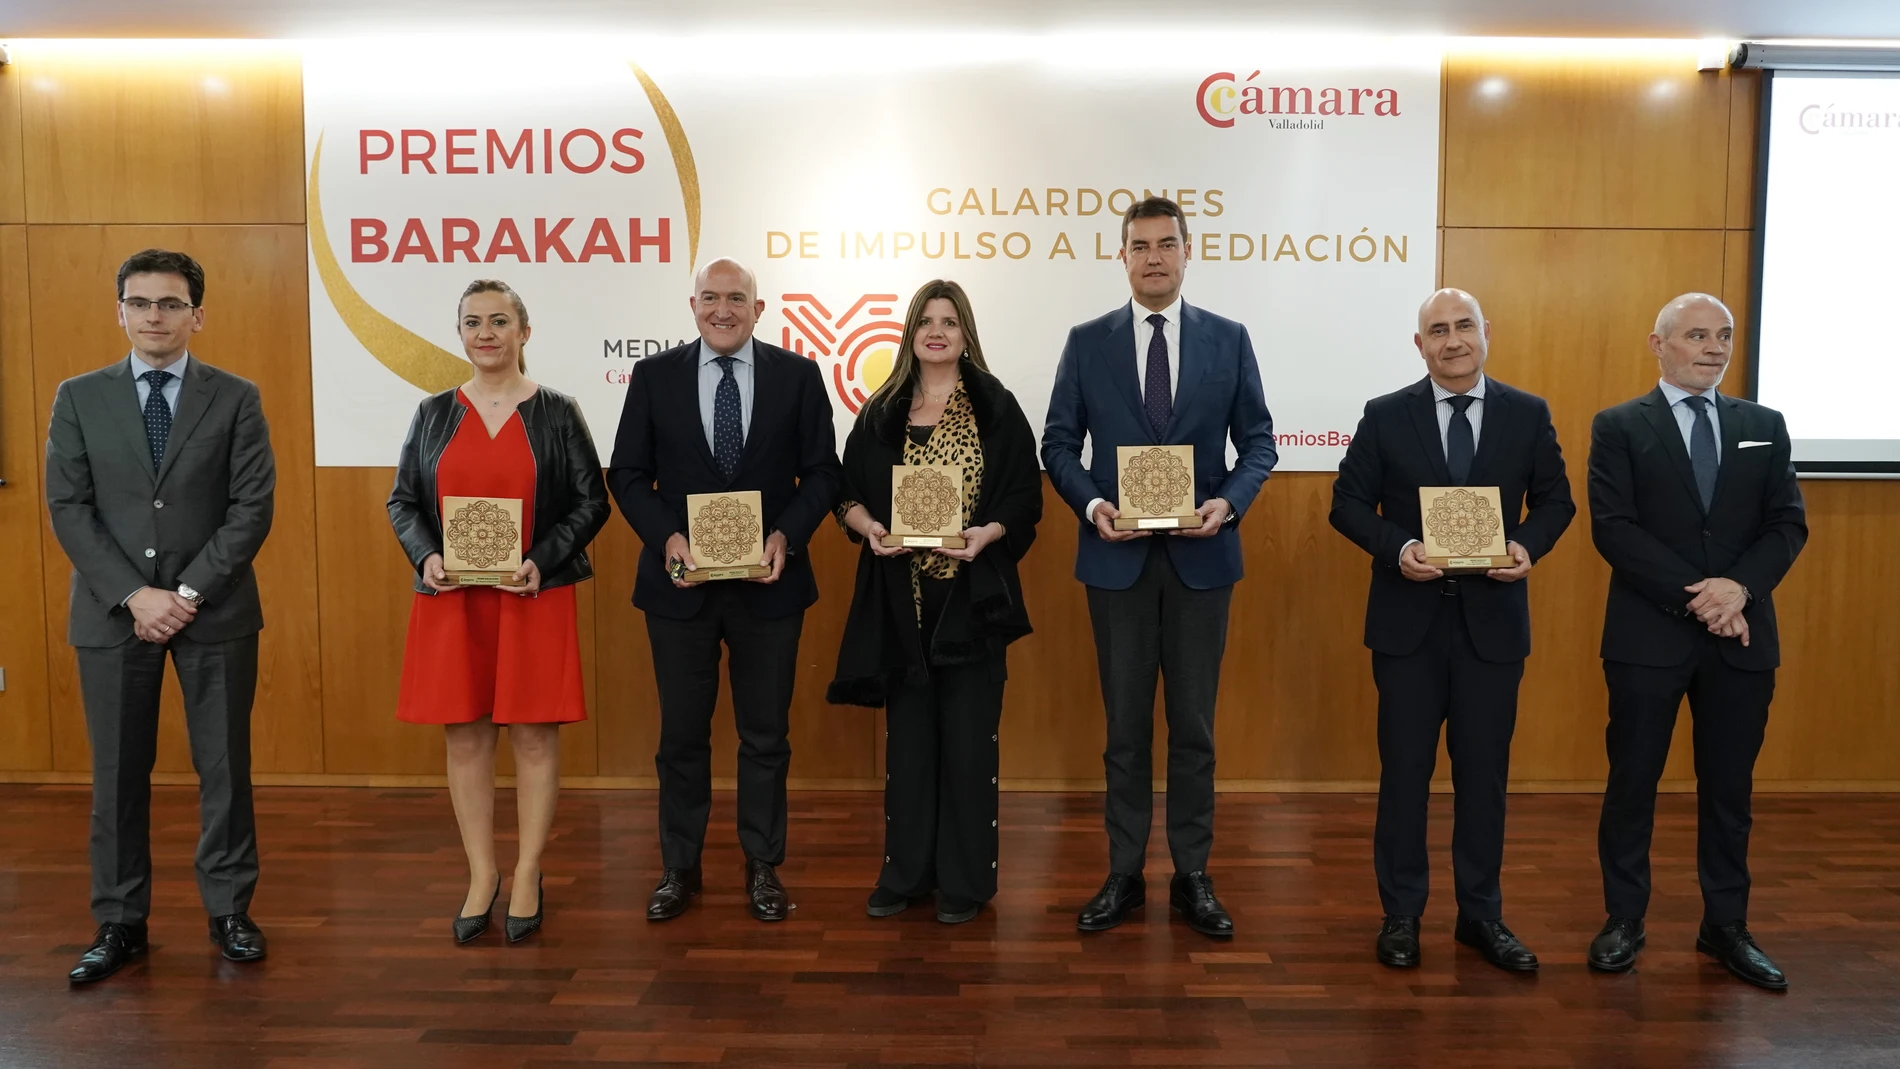 La Cámara de Comercio de Valladolid entrega los Premios Barakah 2022